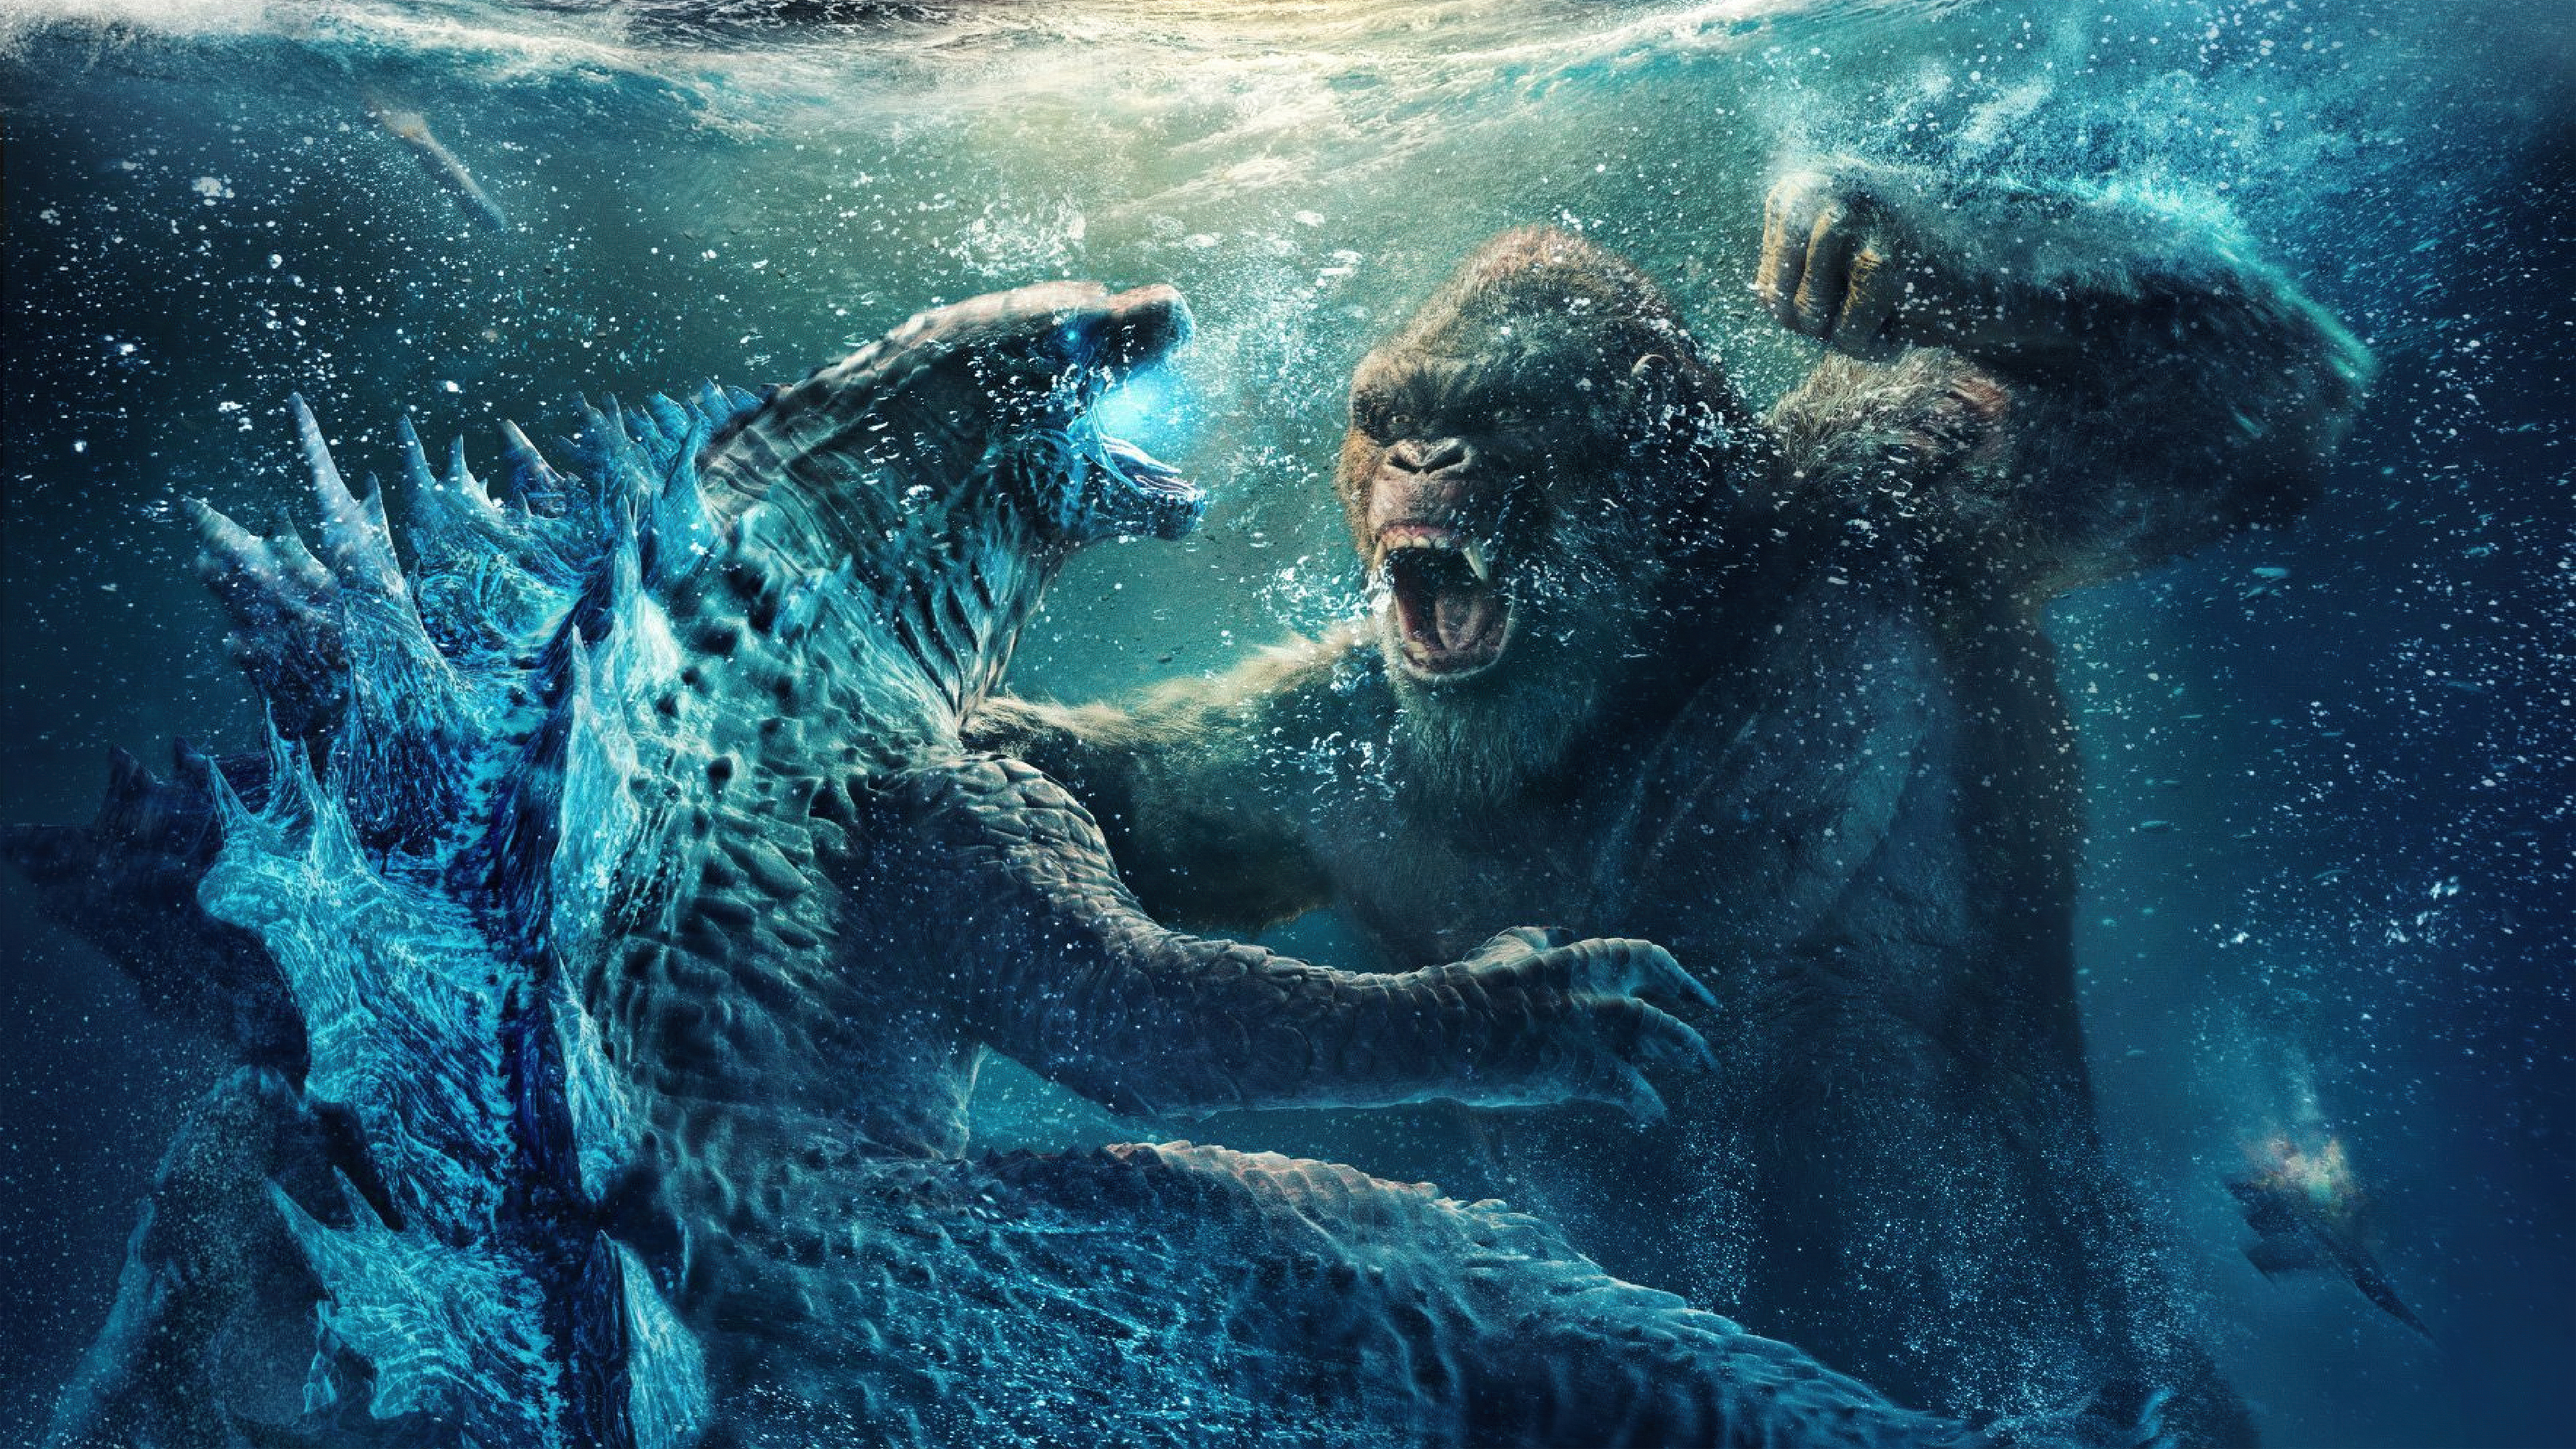 Wallpapers godzilla vs kong King Kong movies on the desktop